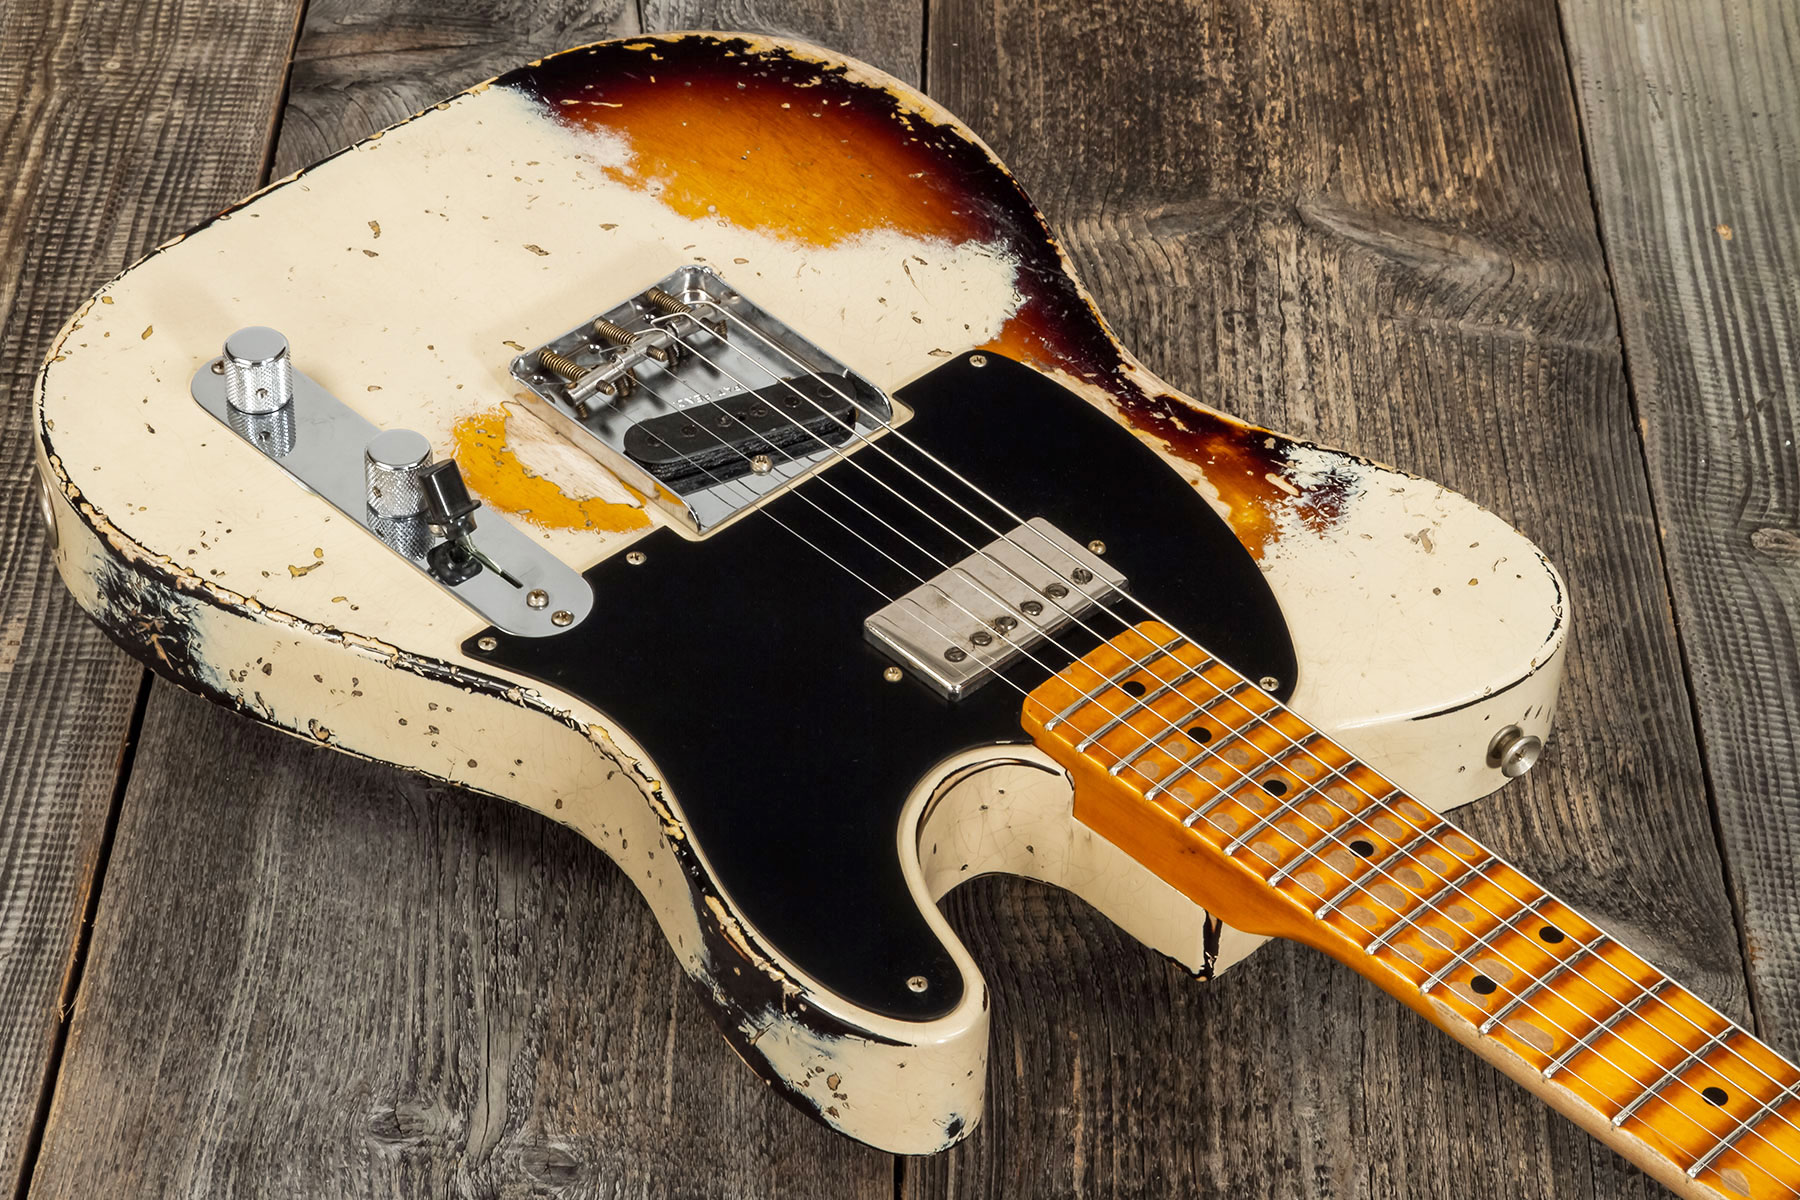 Fender Custom Shop Tele 1957 Sh Ht Mn #r117579 - Heavy Relic Desert Sand Ov. Sunburst - Tel shape electric guitar - Variation 2